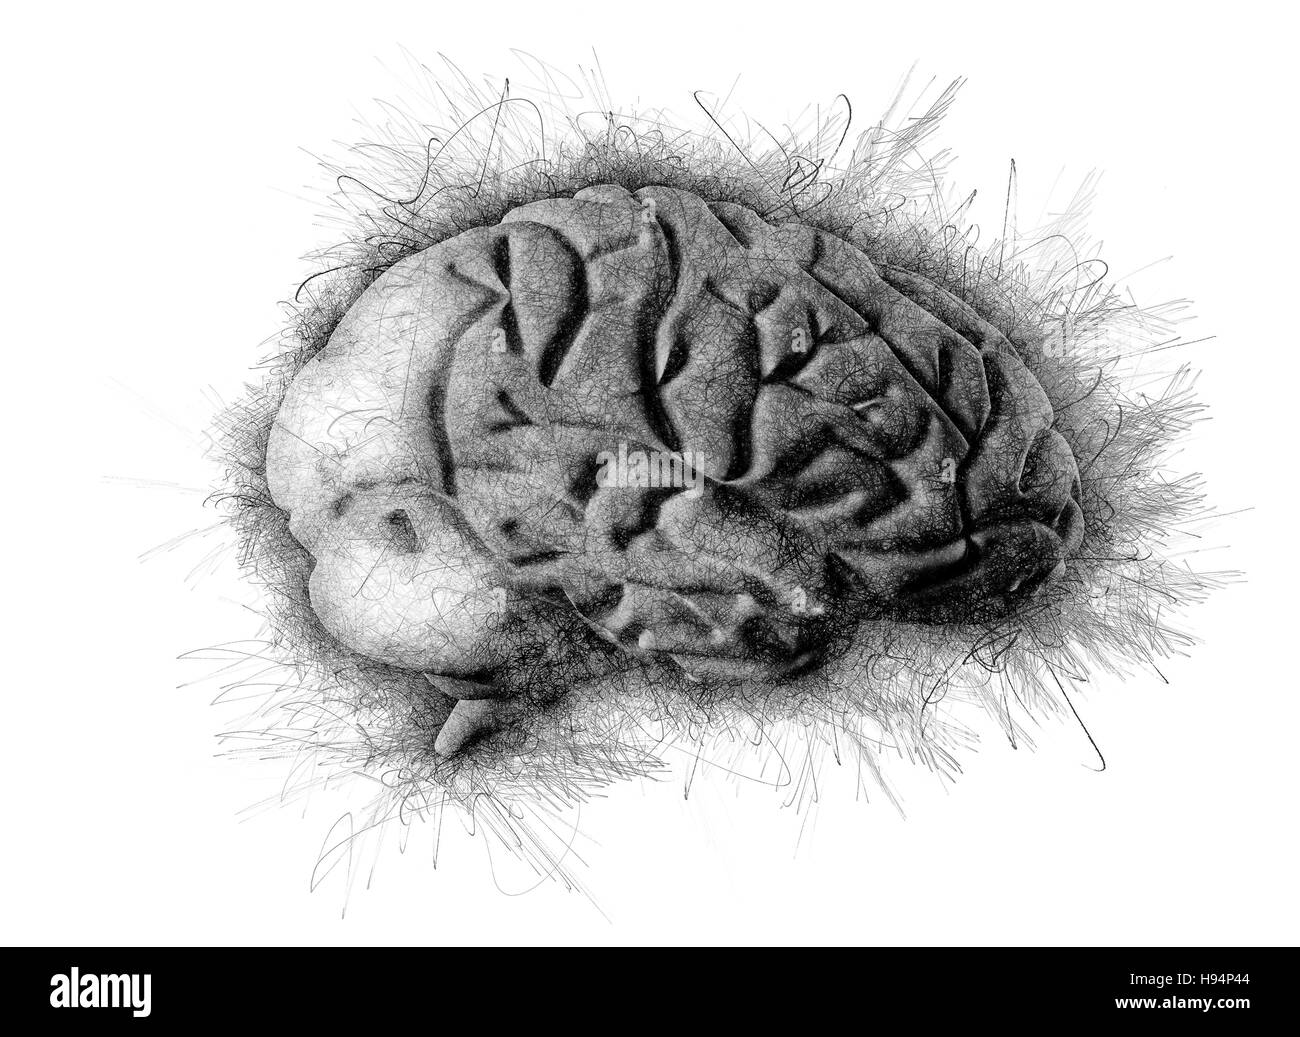 Dessin au crayon dessin artistique du cerveau Banque D'Images